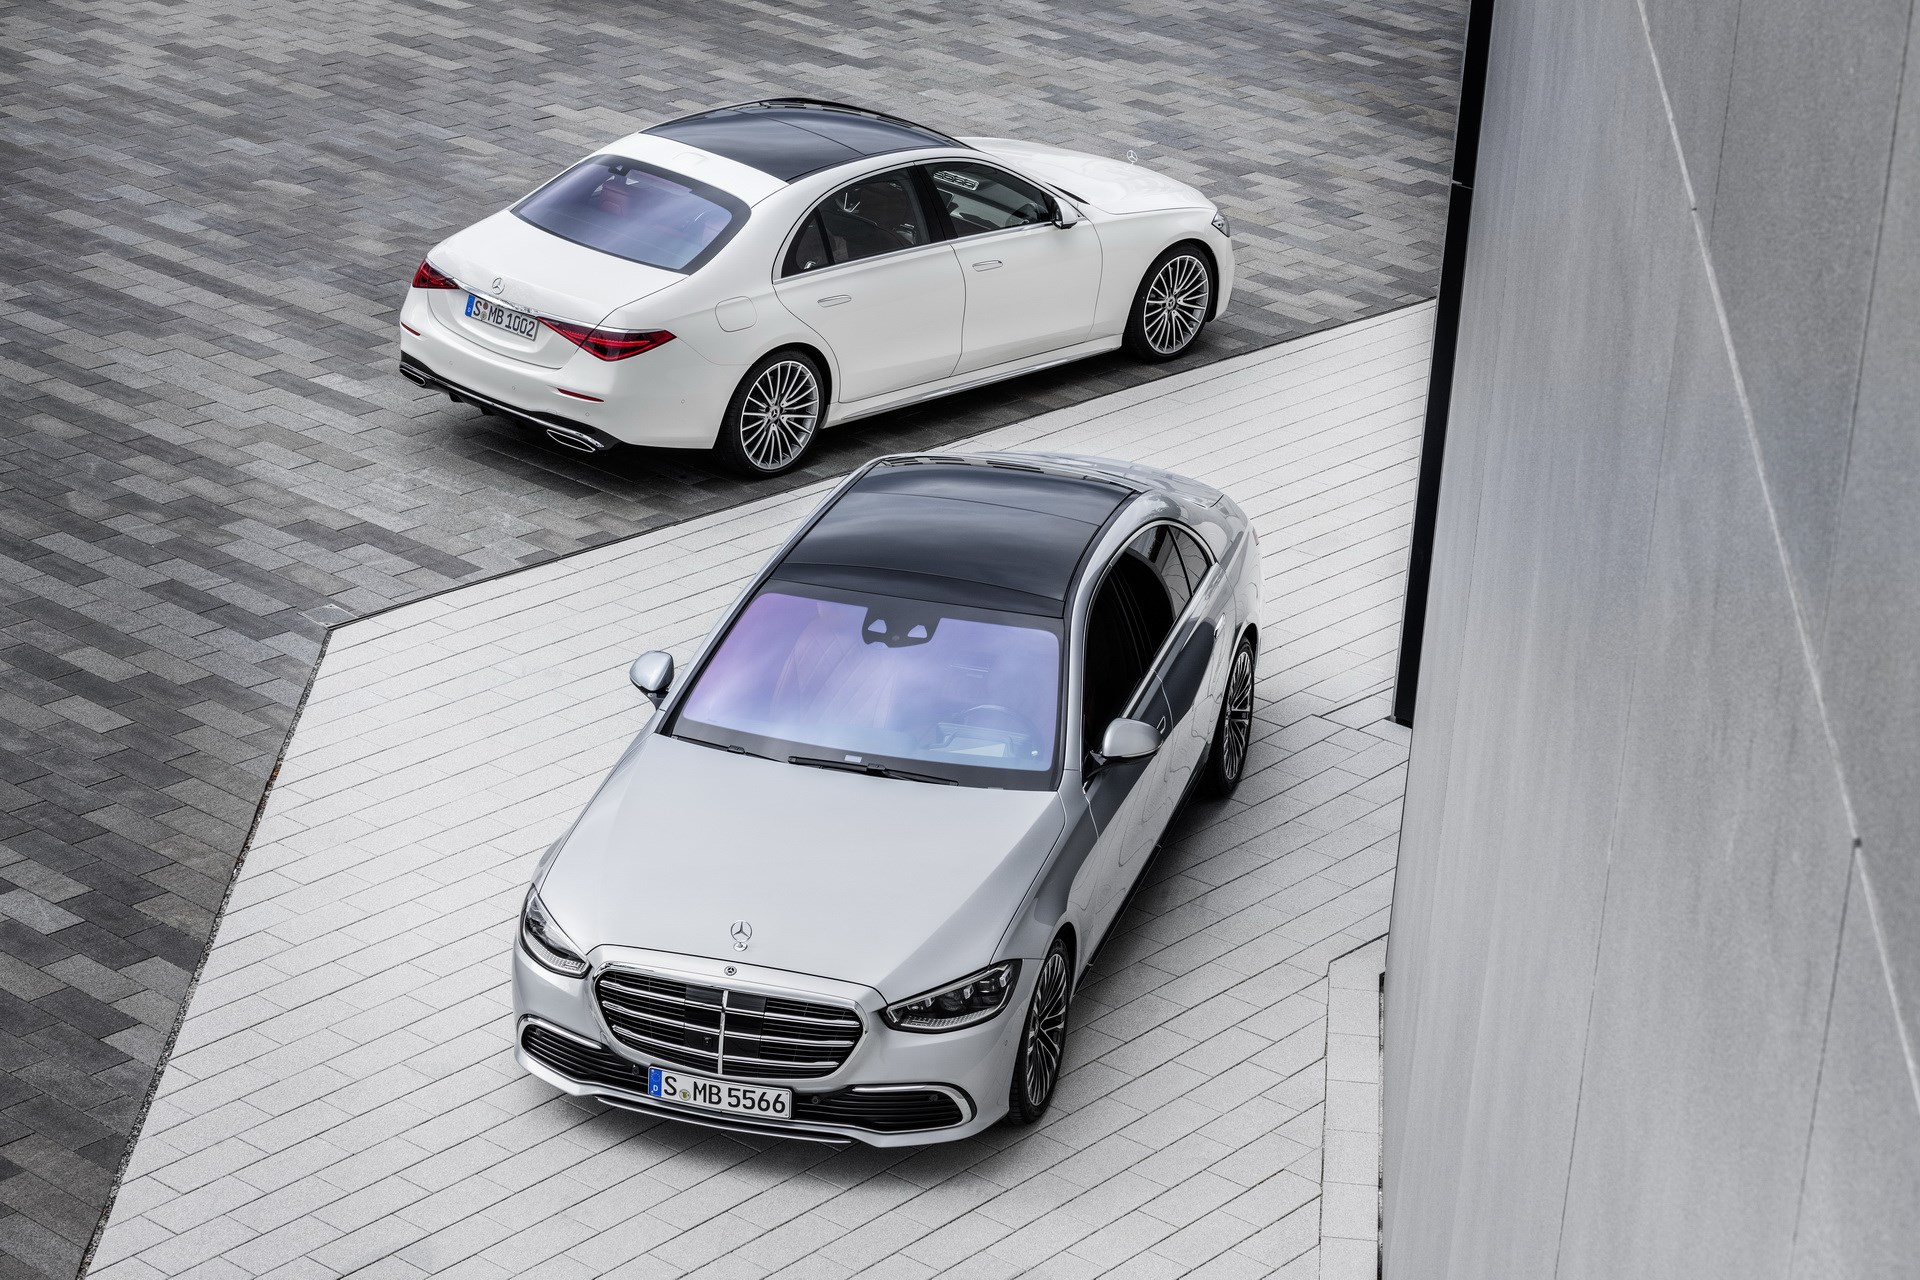 2021 Mercedes-Benz S-Serisi tanıtıldı: Yeni tasarım, gelişmiş teknolojiler ve daha güçlü motorlar